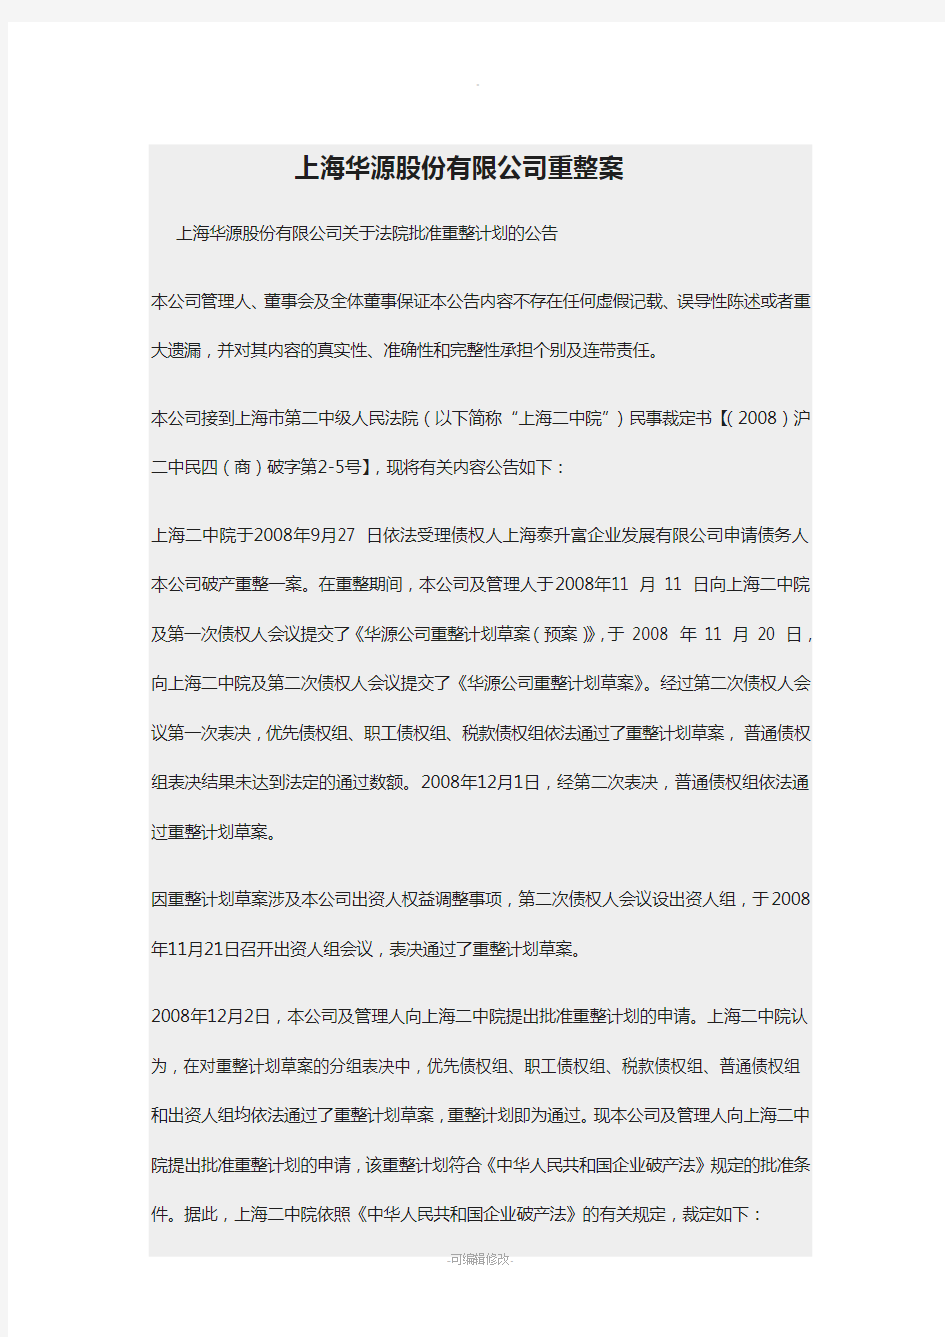 上海华源股份有限公司重整案